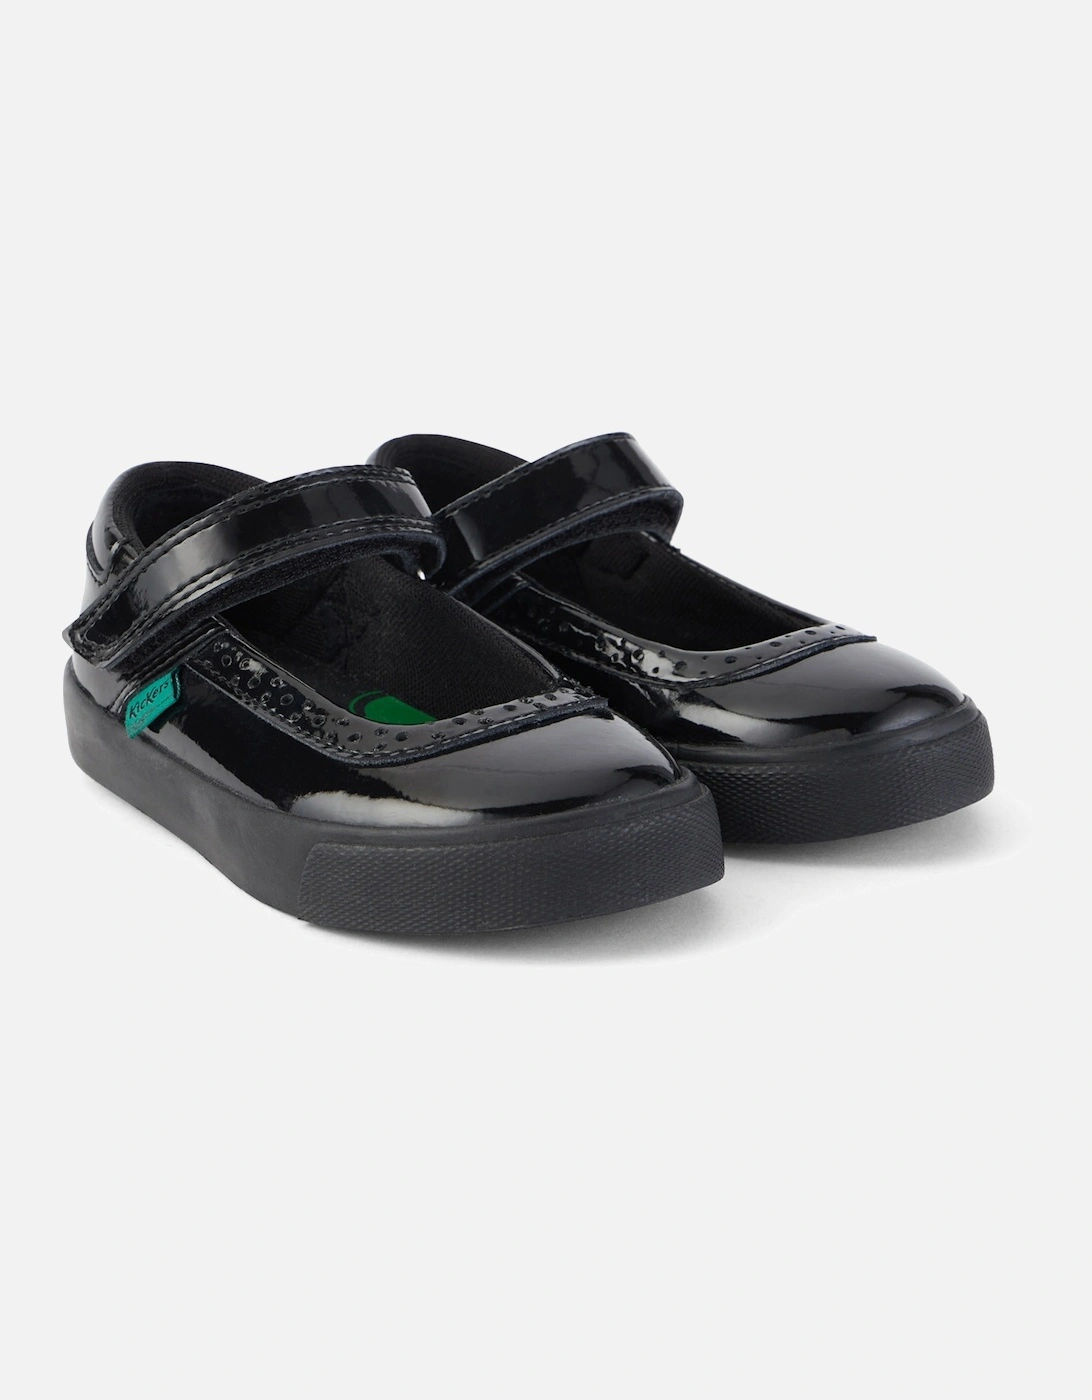 Infants Tovni Brogue Patent Shoes (Black)